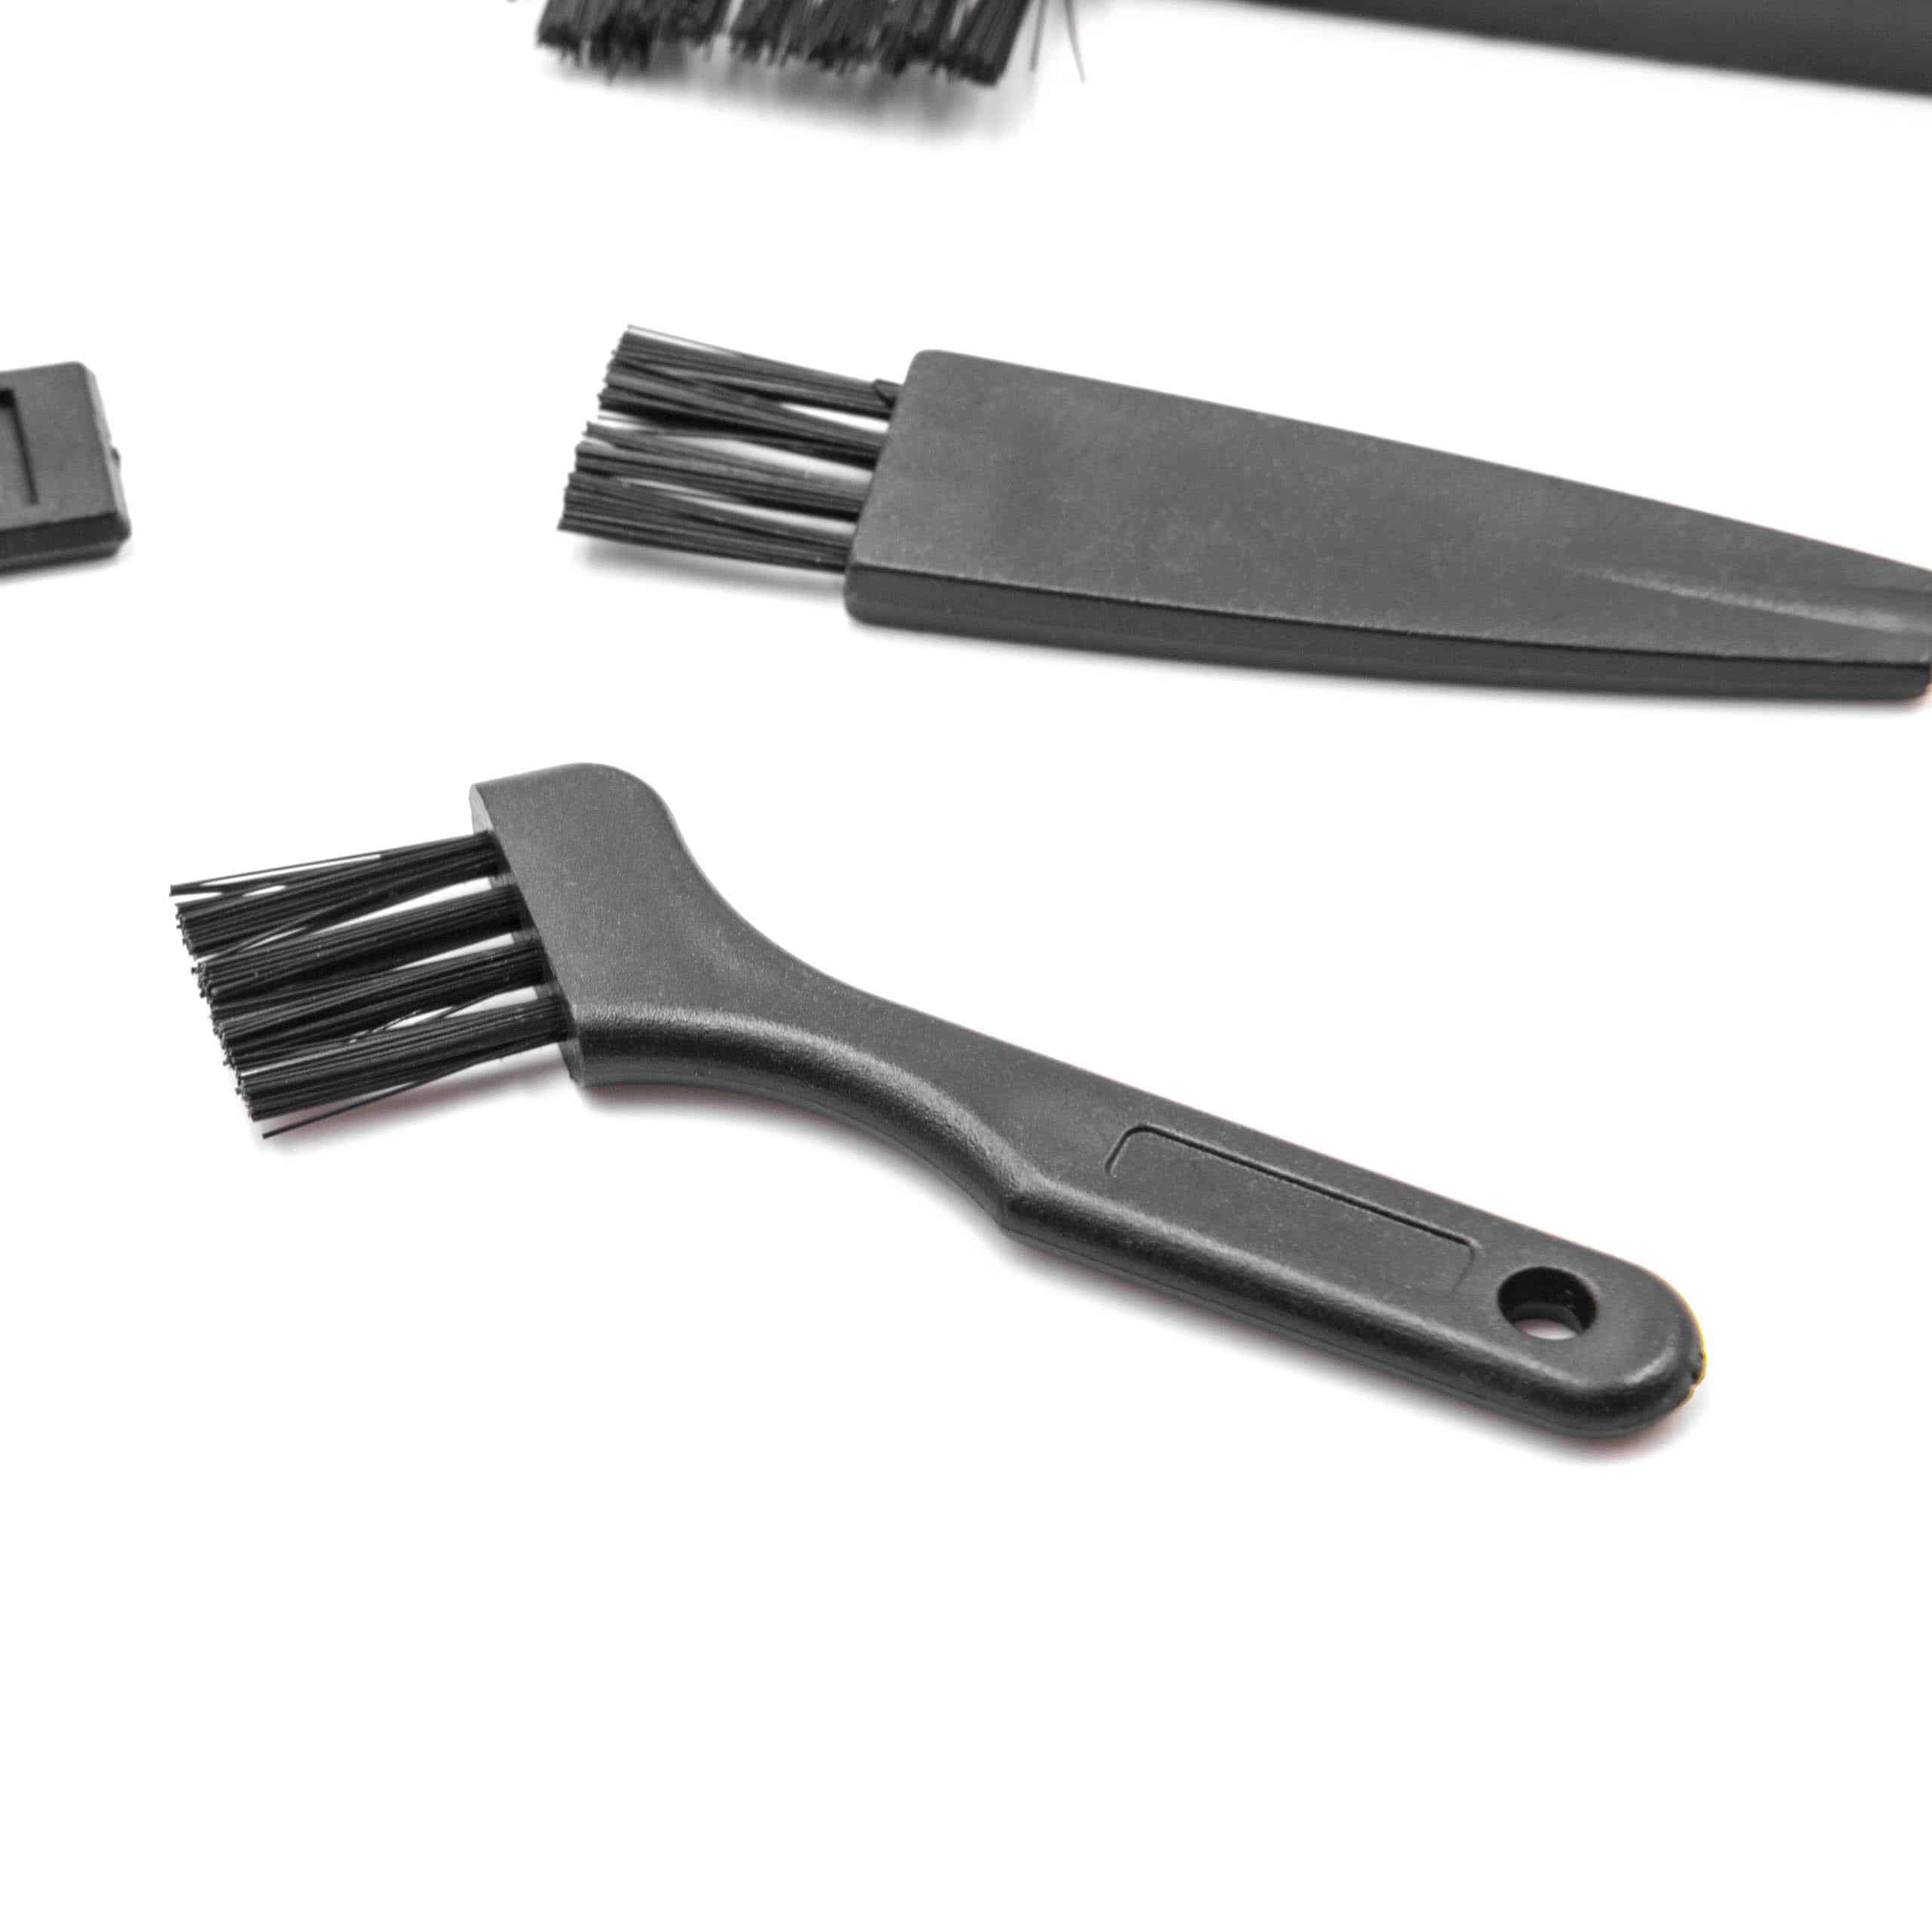 9x Brosse de nettoyage pour rasoir, tondeuse à barbe ou cheveux 